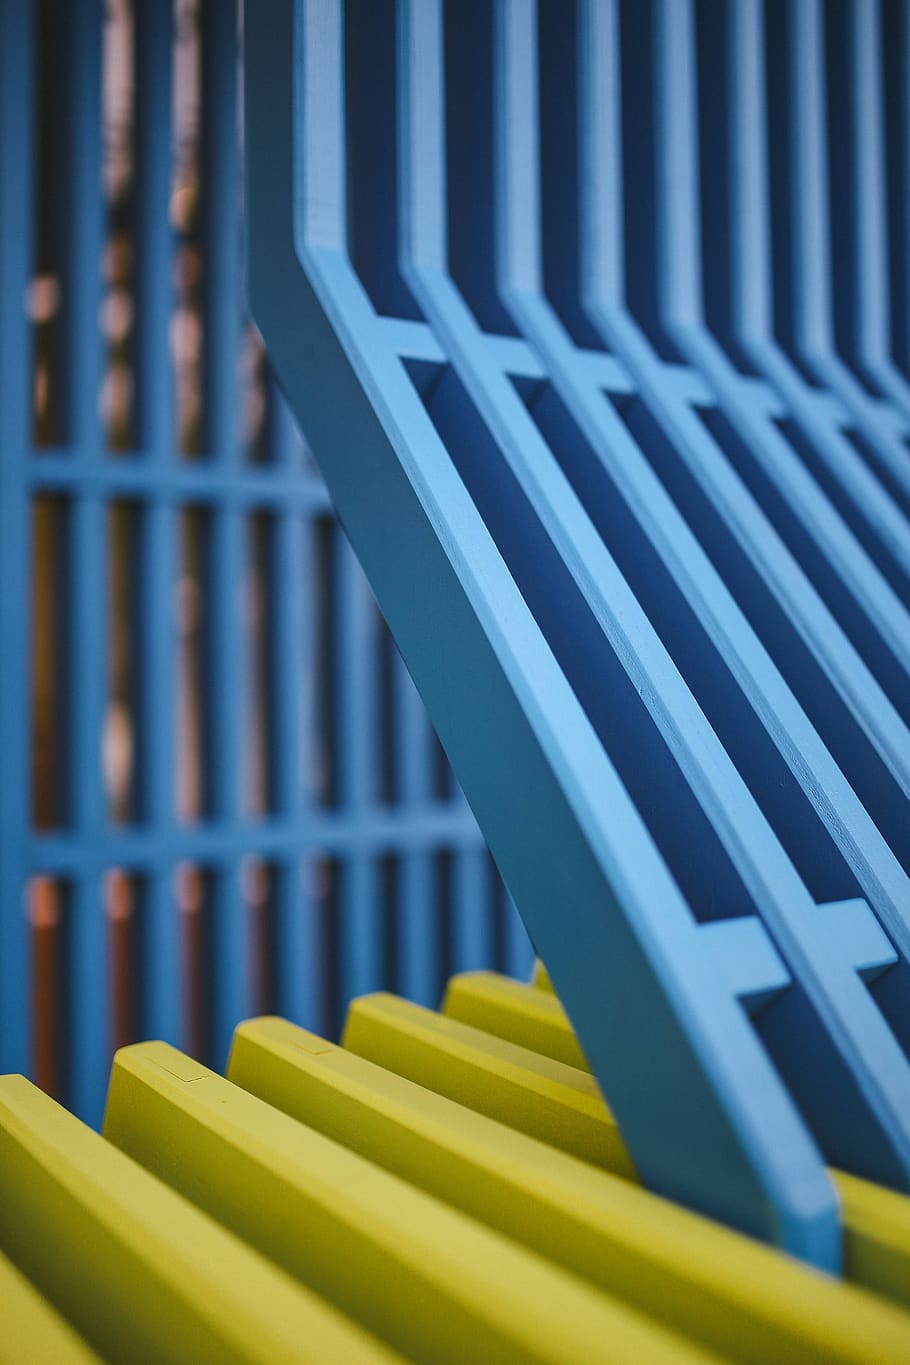 cerca, madeira, barras, cor, construção, Colorido, areia, azul, close-up, padrão